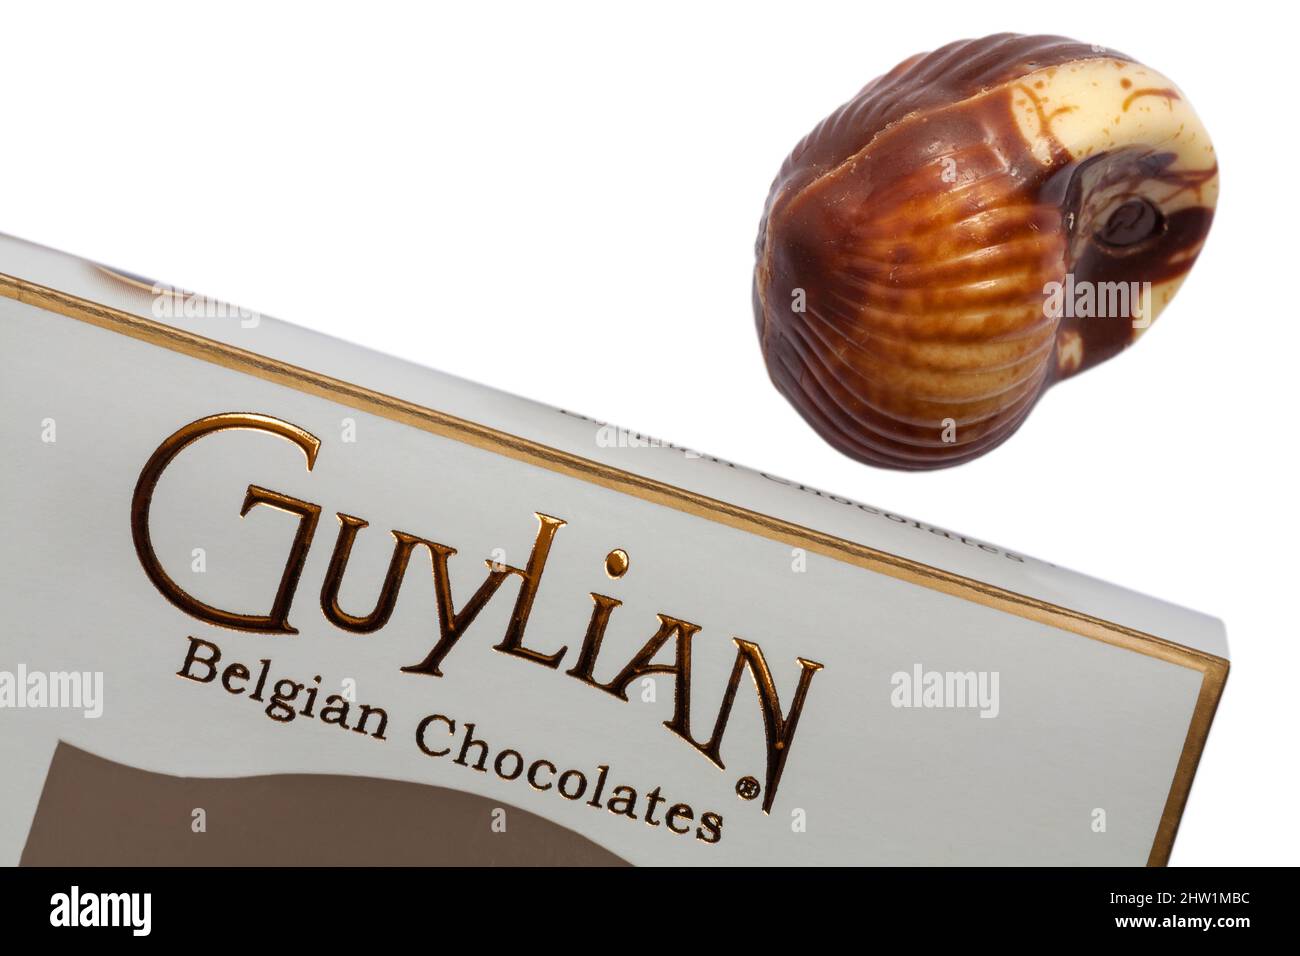 Guylian Belgian chocolates seashells chocolate seashell with box set on white background - finest Belgian chocolates with hazelnut praline filling Stock Photo